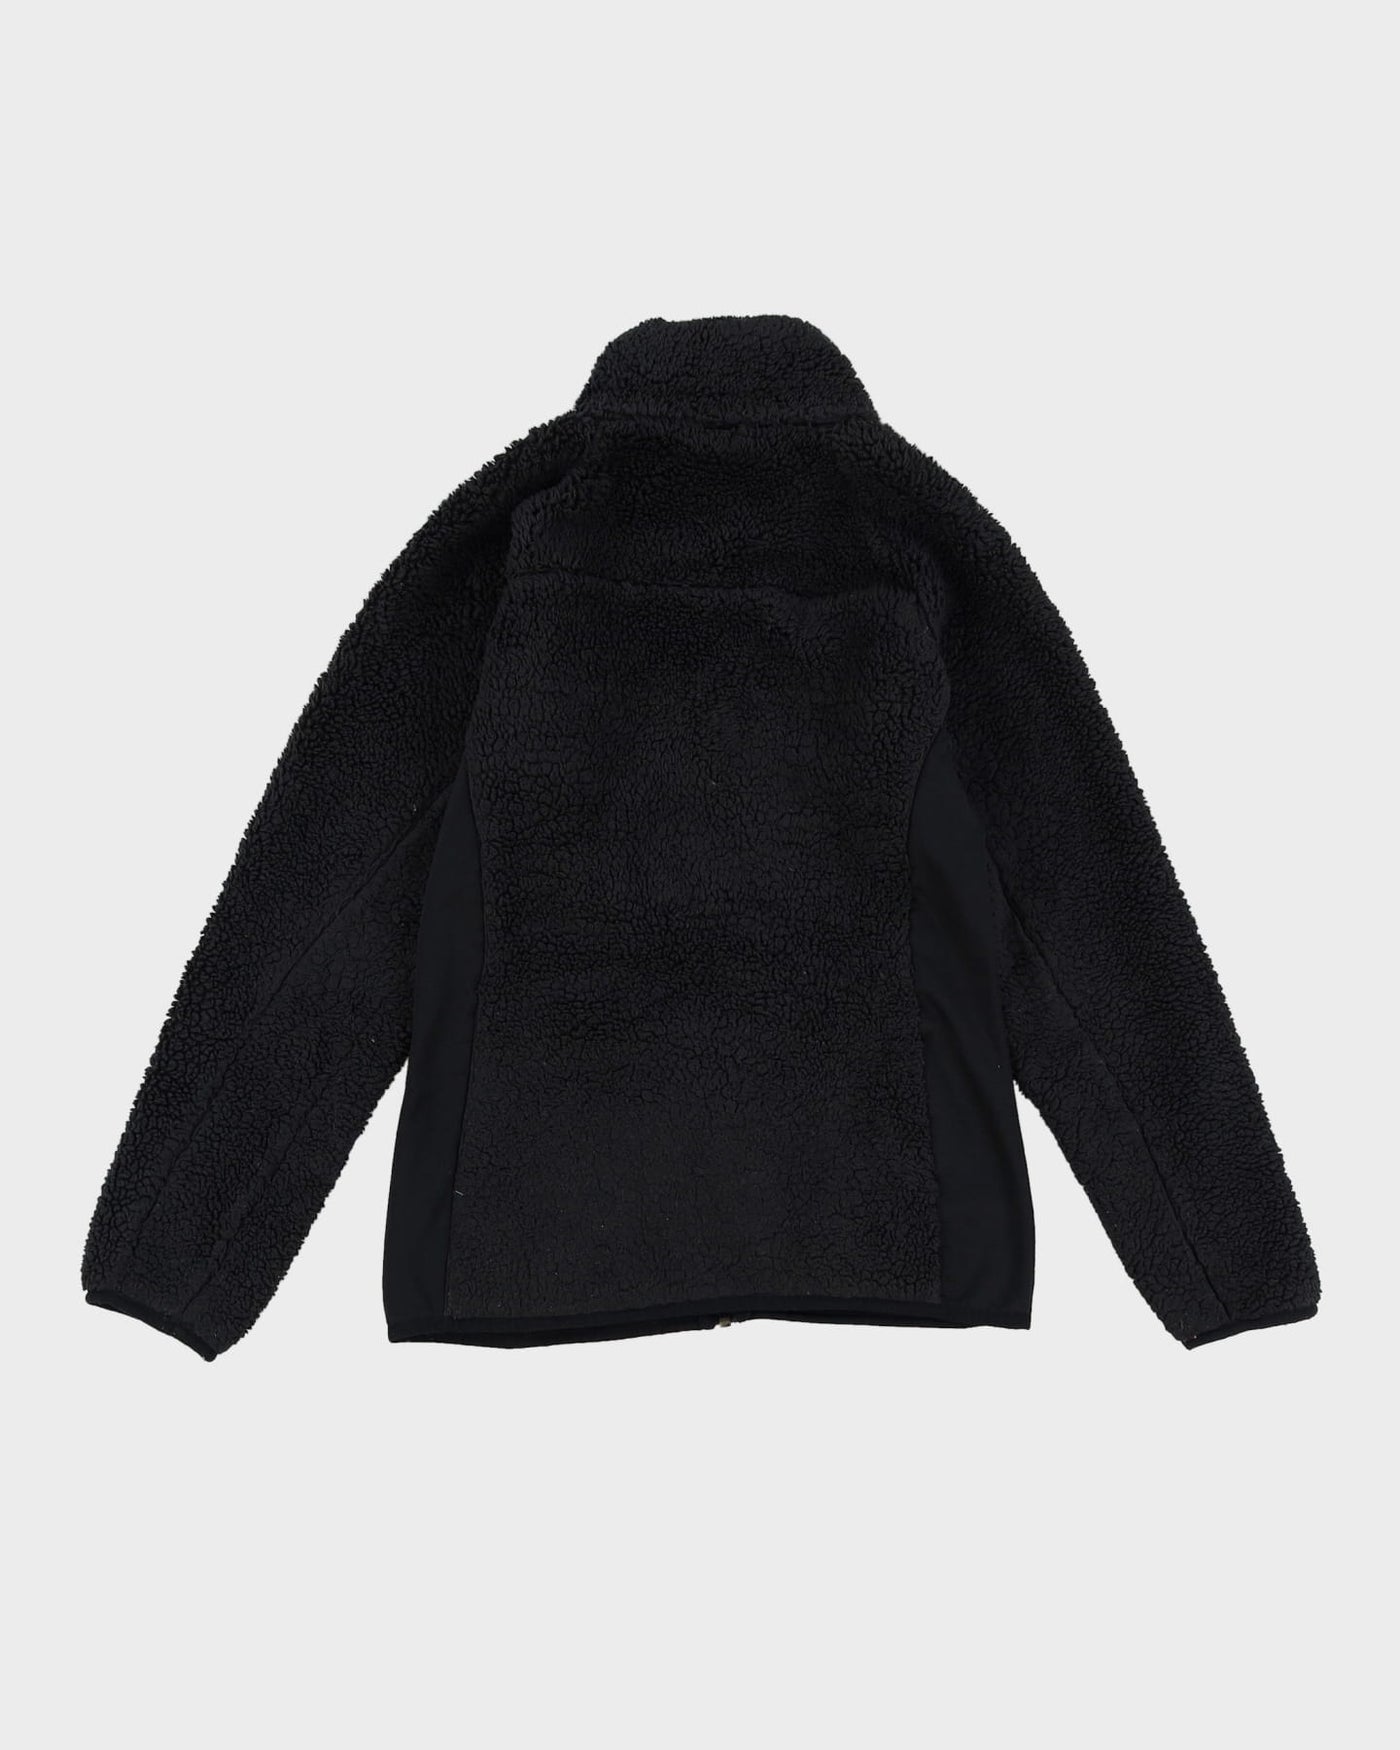 Columbia Black Fleece Jacket - S